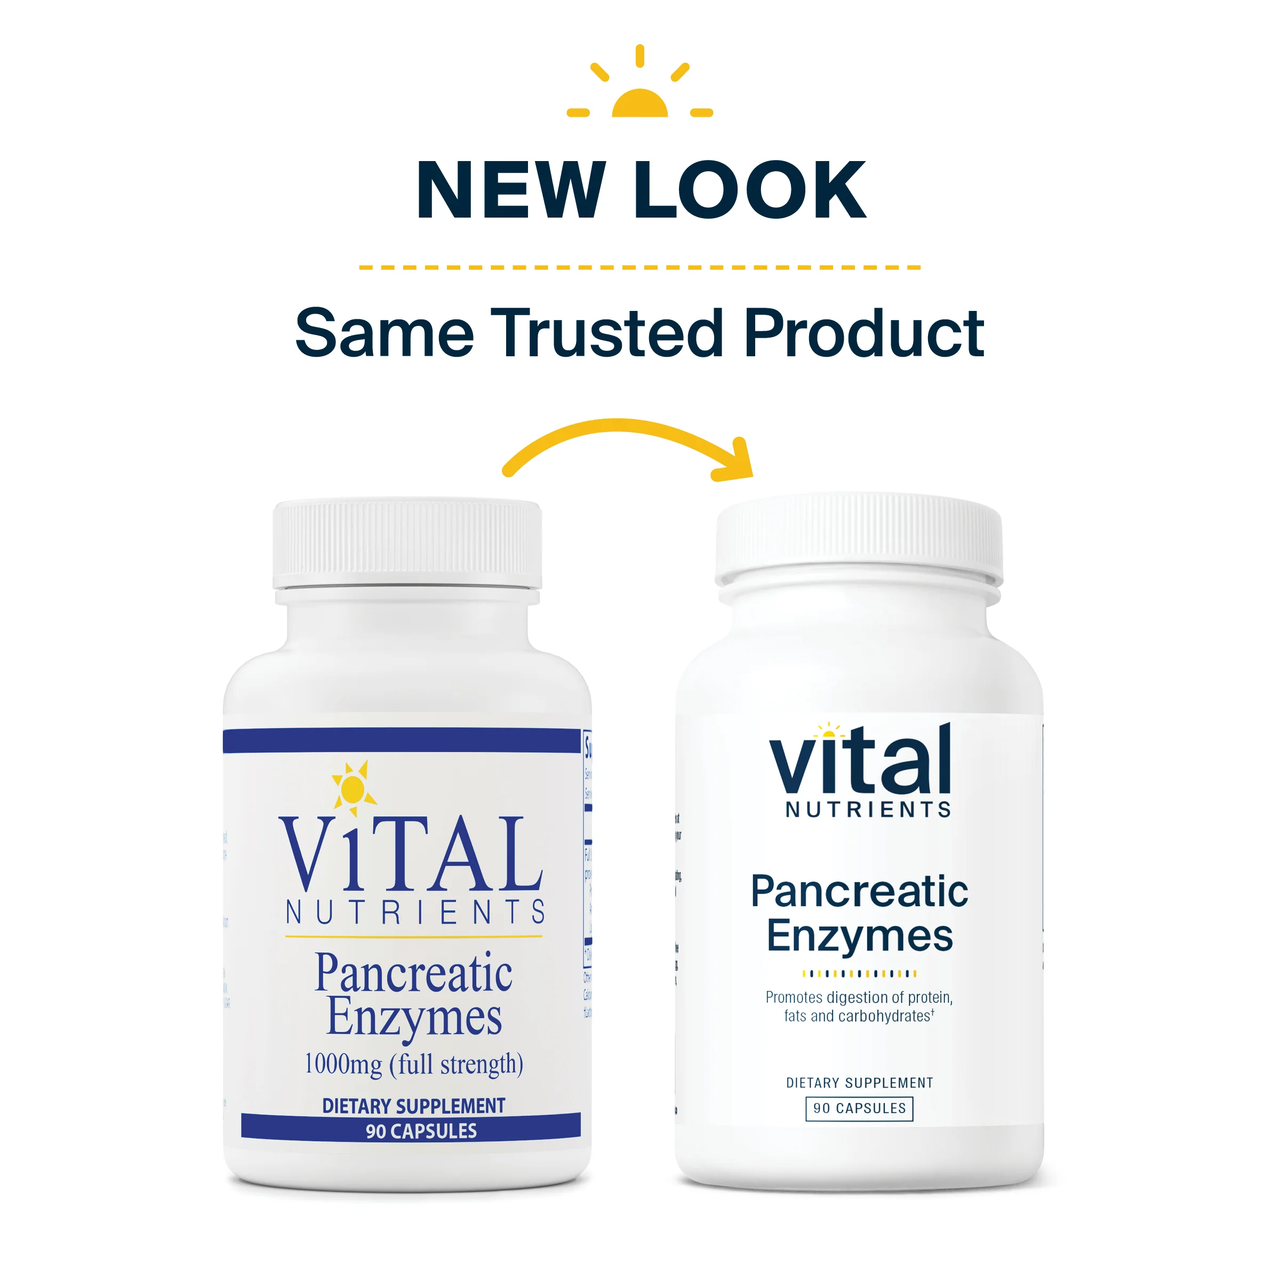 Pancreatic Enzymes - Vital Nutrients